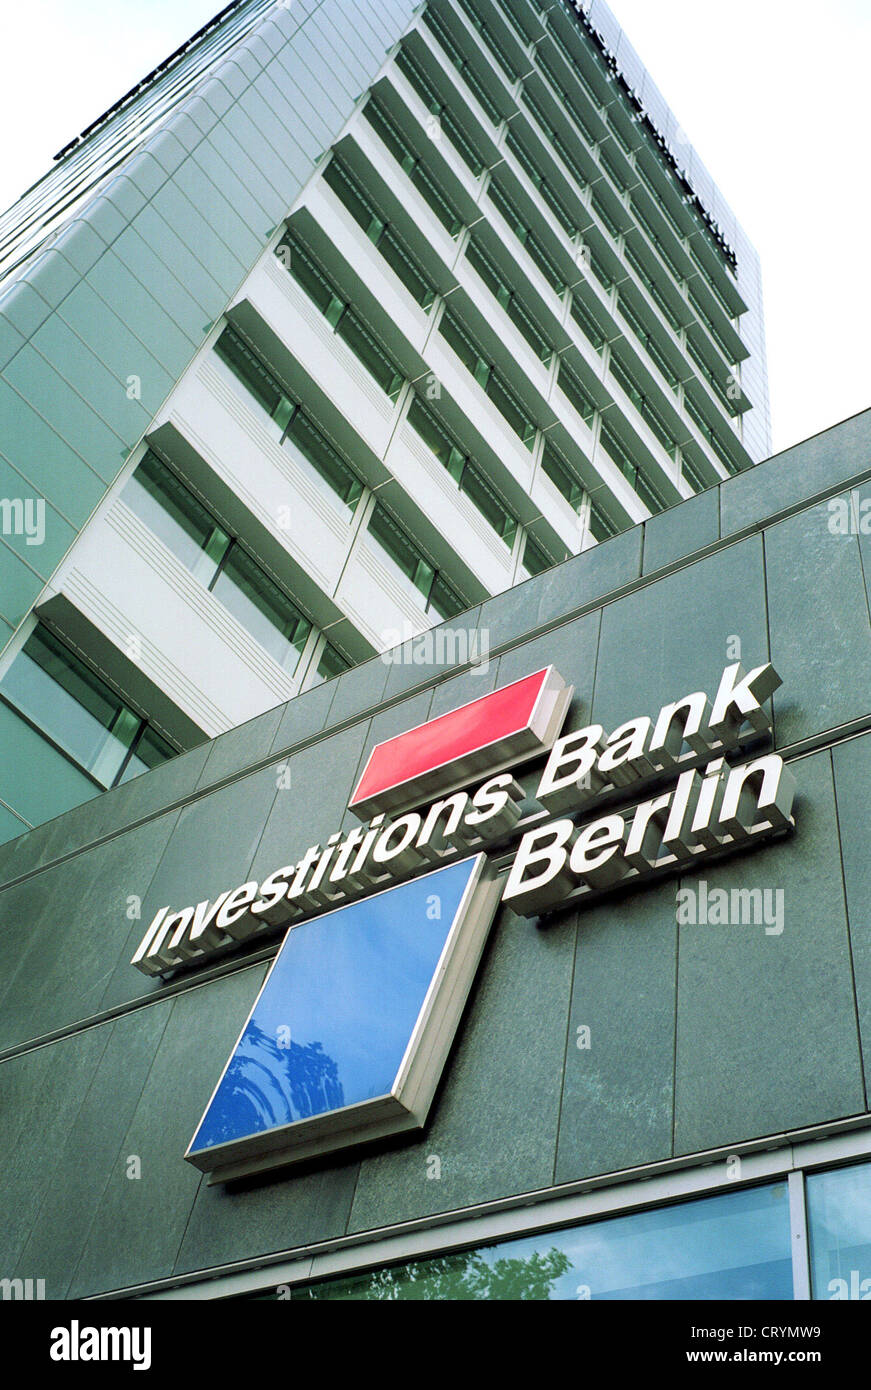 Investitionsbank berlin -Fotos und -Bildmaterial in hoher Auflösung – Alamy